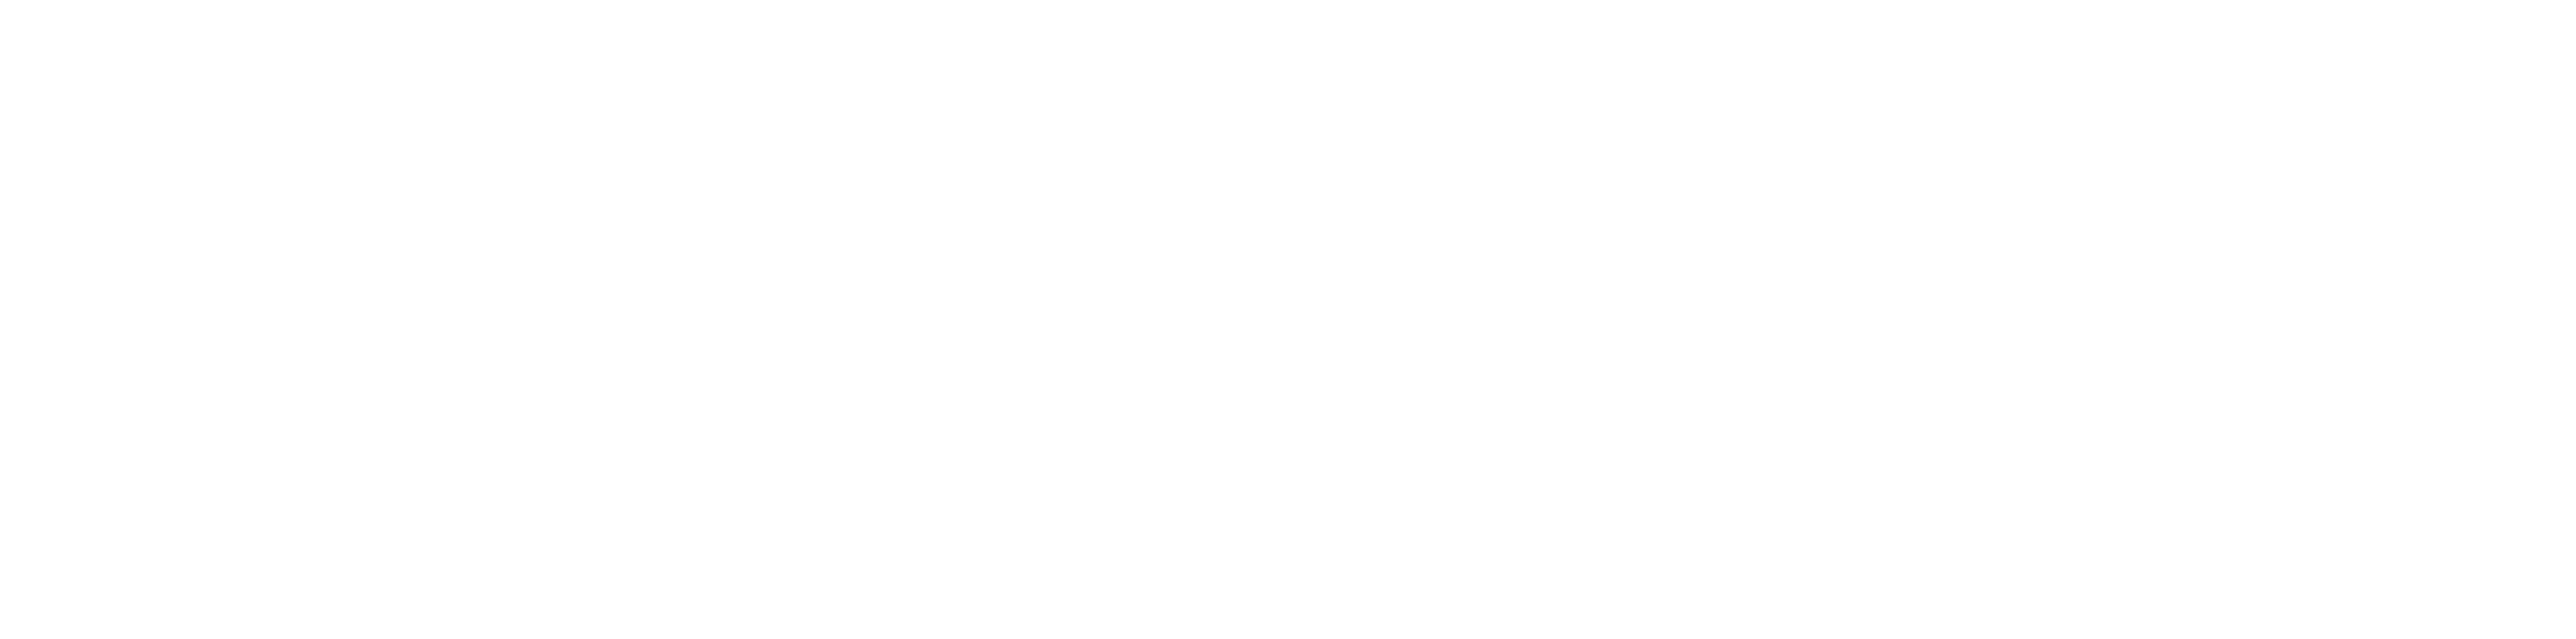 Nursing Direct Logo